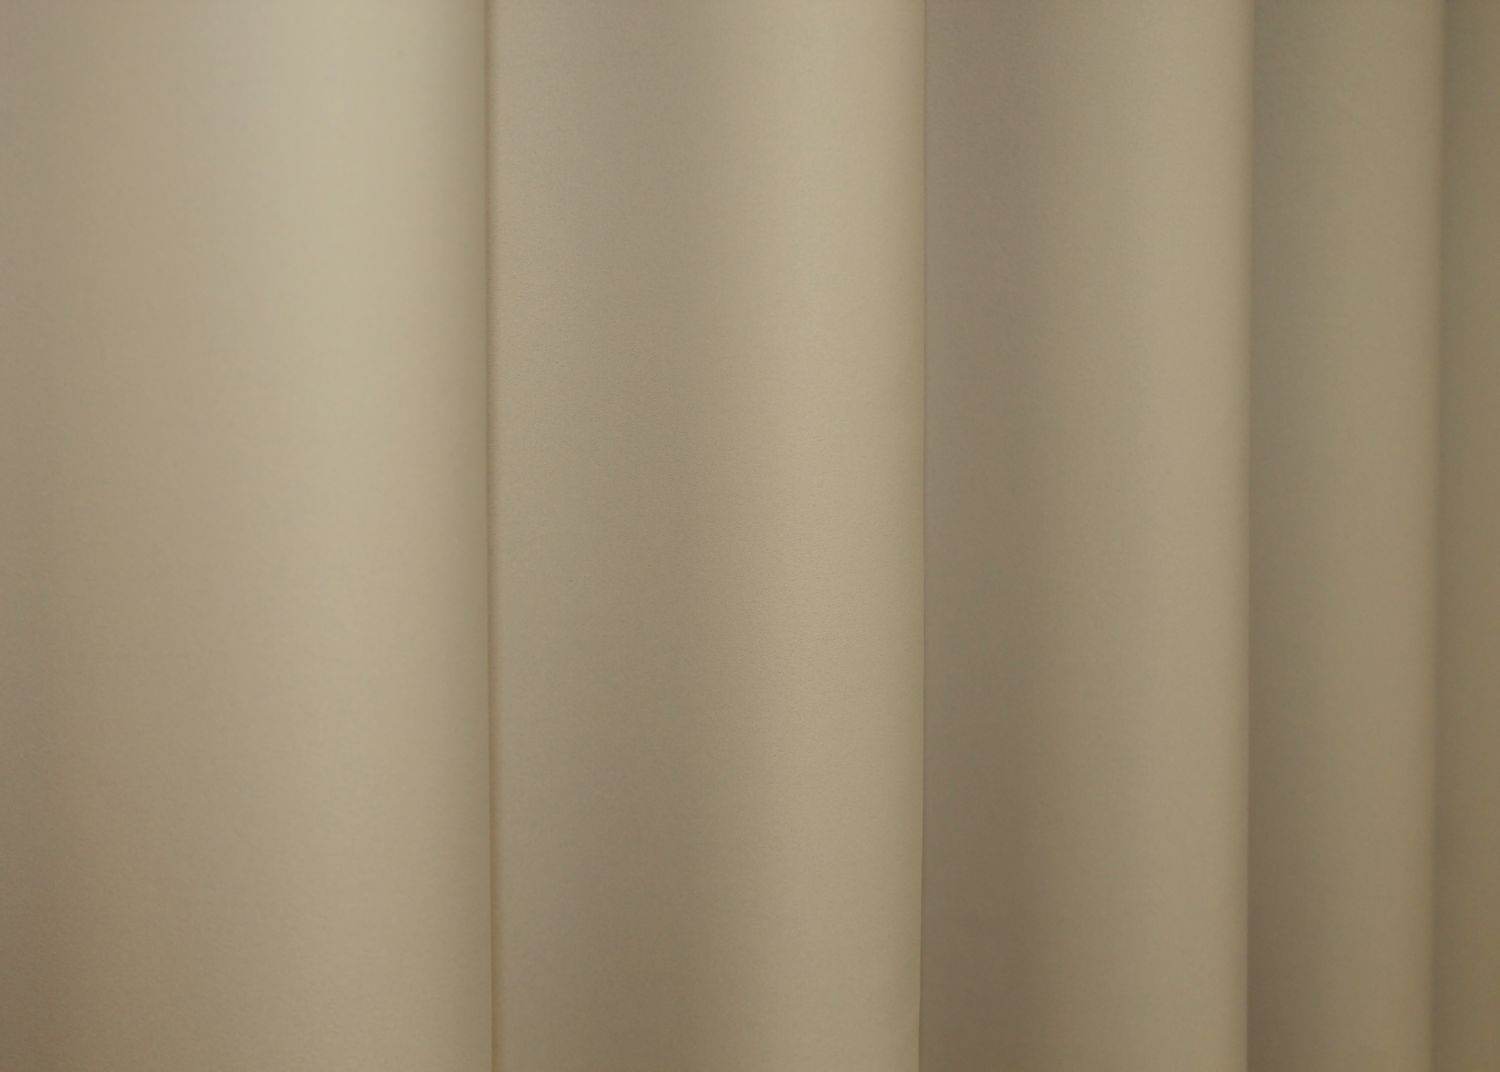 Комплект штор из ткани блэкаут, коллекция "Midnight" цвет кремовый 1222ш, Кремовый, Комплект штор (2 шт. 1,5х2,9м.), Классические, Без ламбрекена, Длинные, 1,5 м., 2,9 м., 150, 290, 2 - 3 м., В комплекте 2 шт., Тесьма